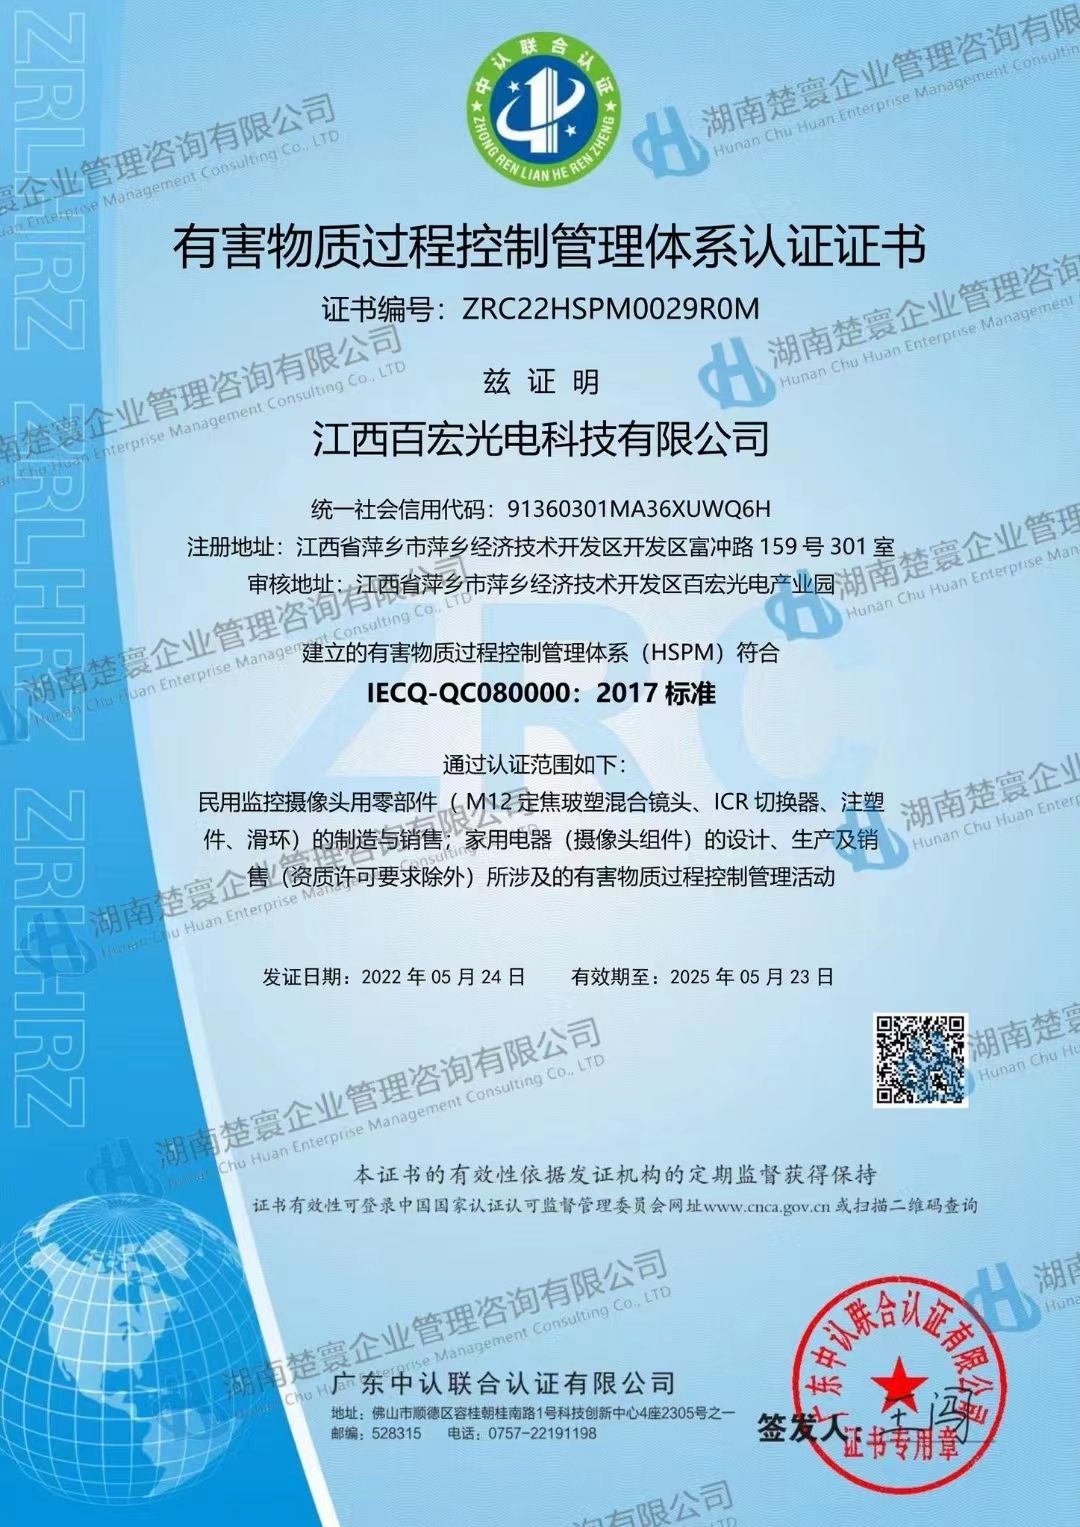 热烈祝贺江西百宏光电顺利获取IECQ-QC080000:2017管理体系认证证书